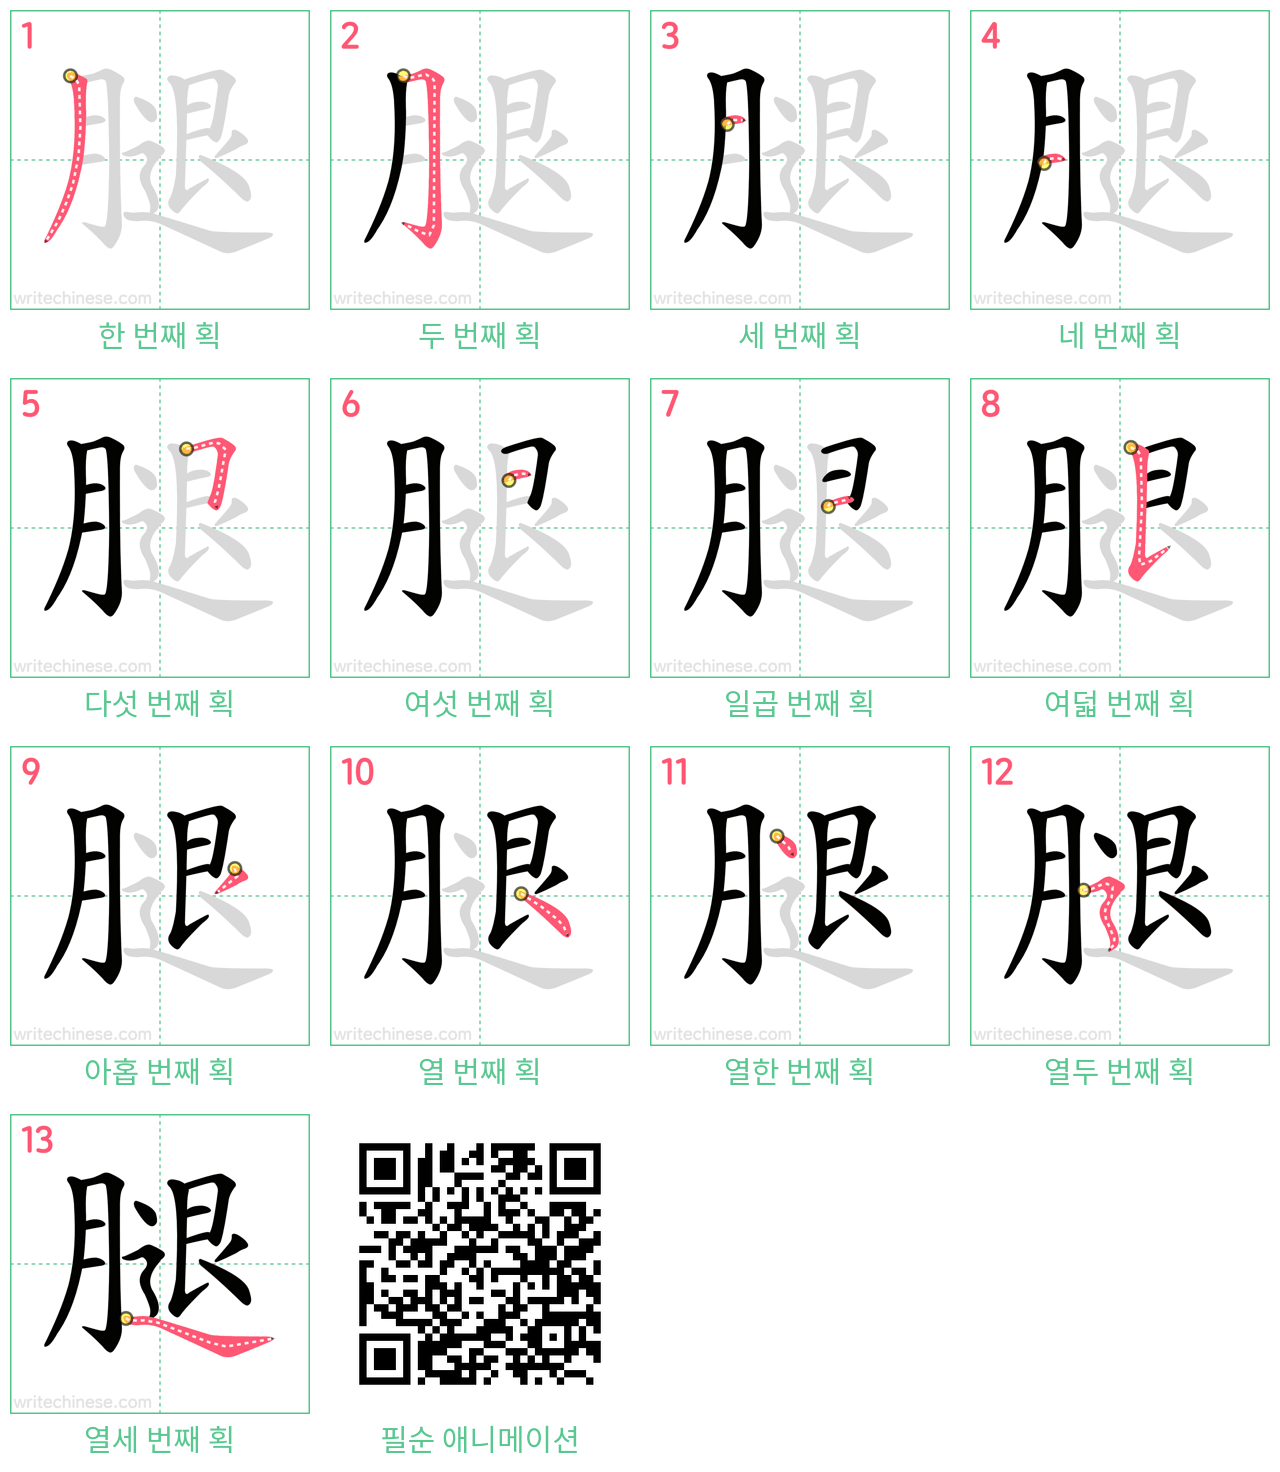 腿 step-by-step stroke order diagrams